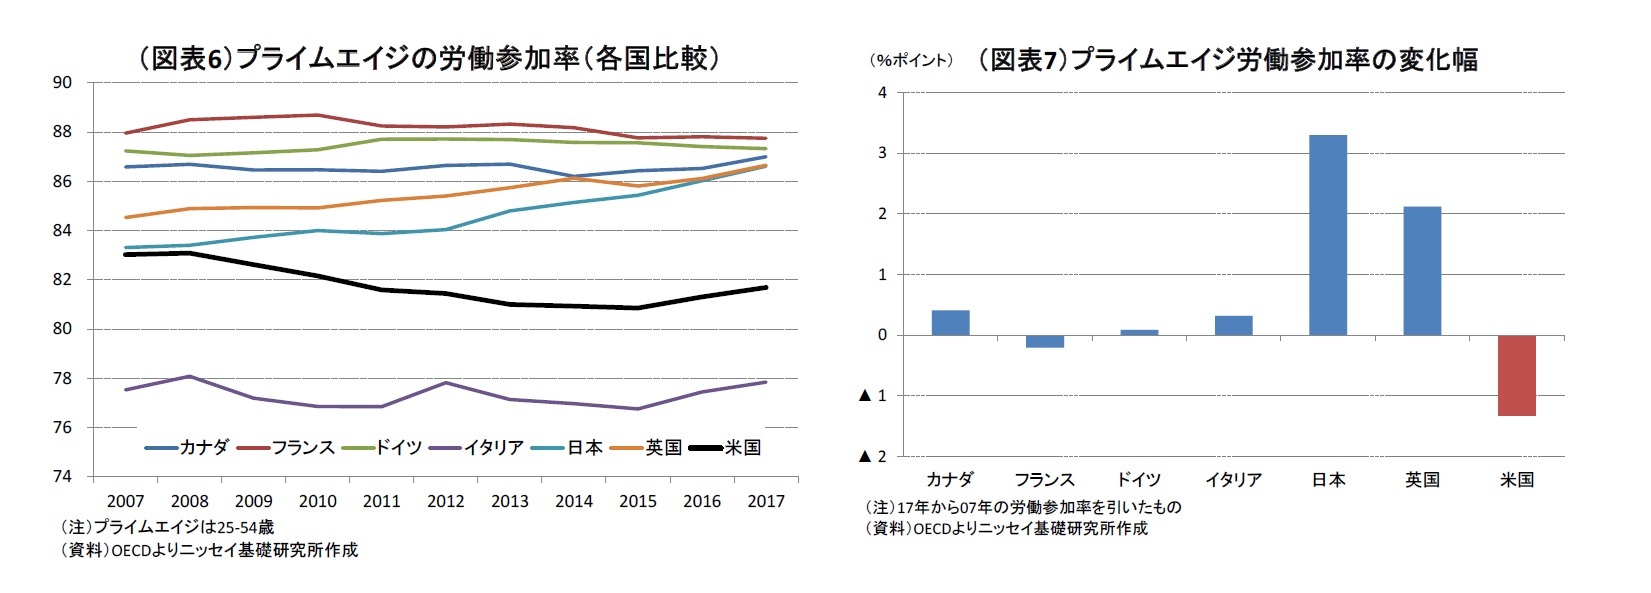 （図表6）プライムエイジの労働参加率（各国比較）/（図表7）プライムエイジ労働参加率の変化幅